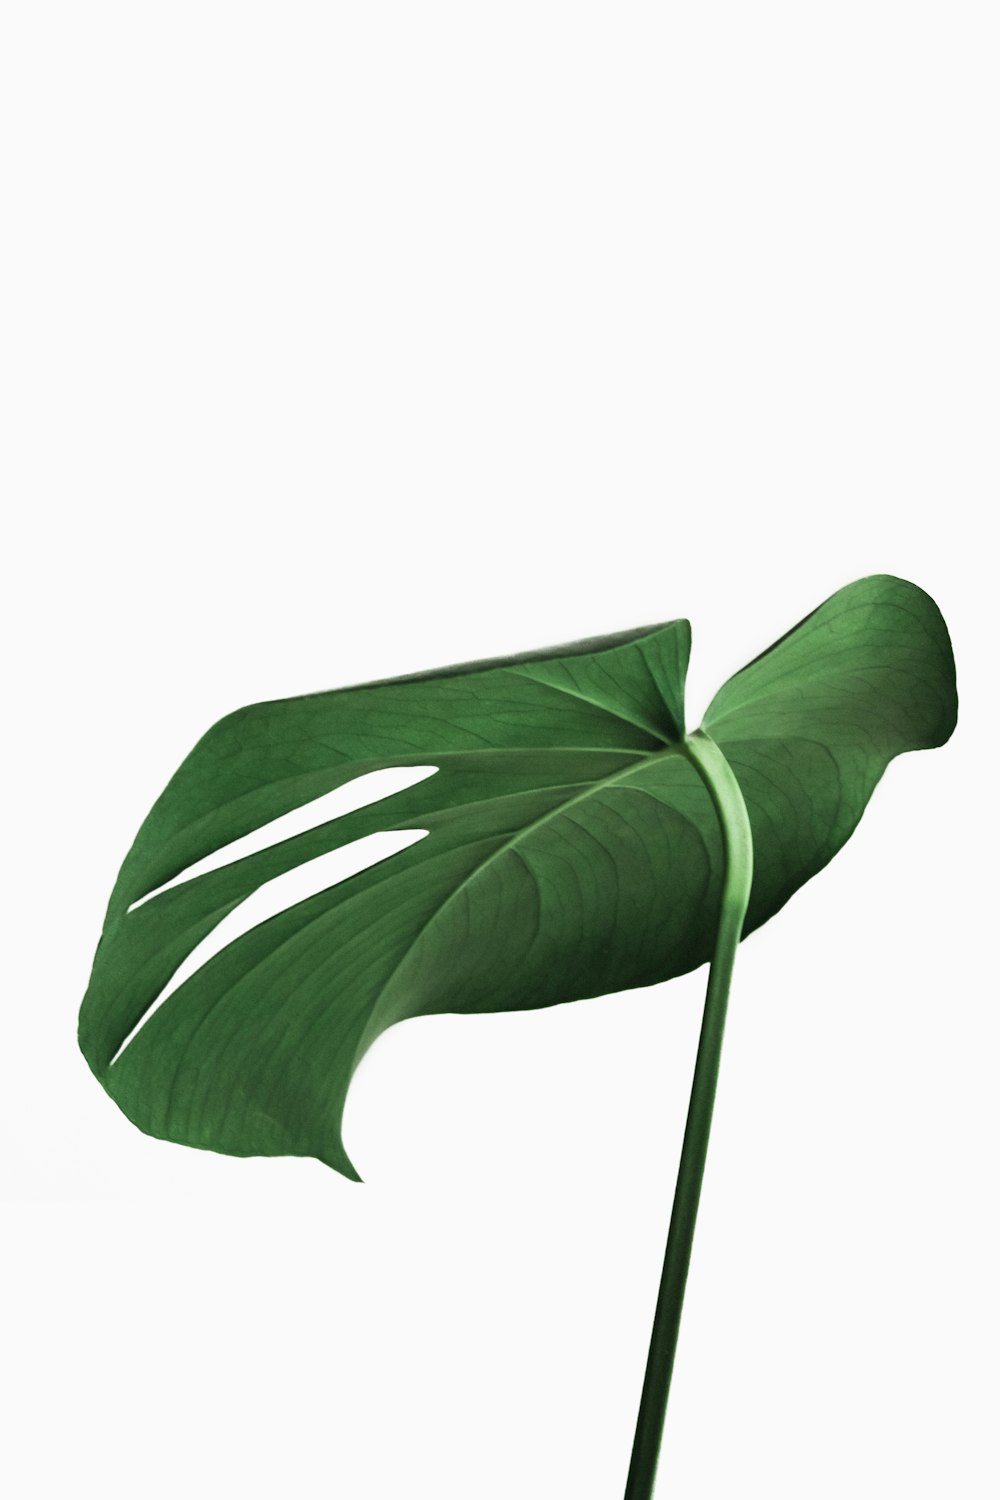 pianta a foglia verde su sfondo bianco